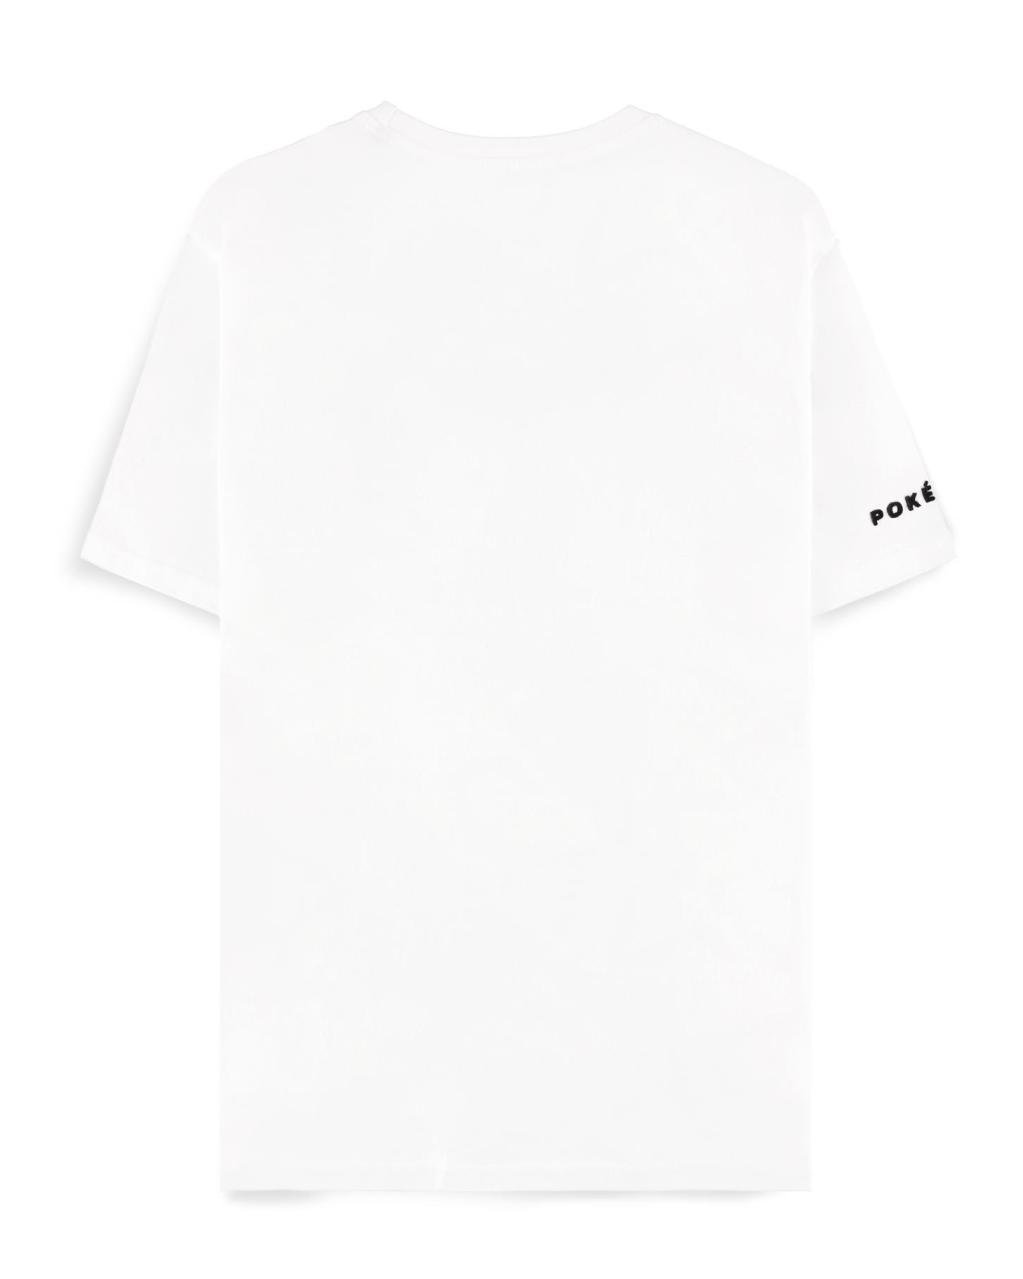 POKEMON - Ash - Men's T-shirt (XS)